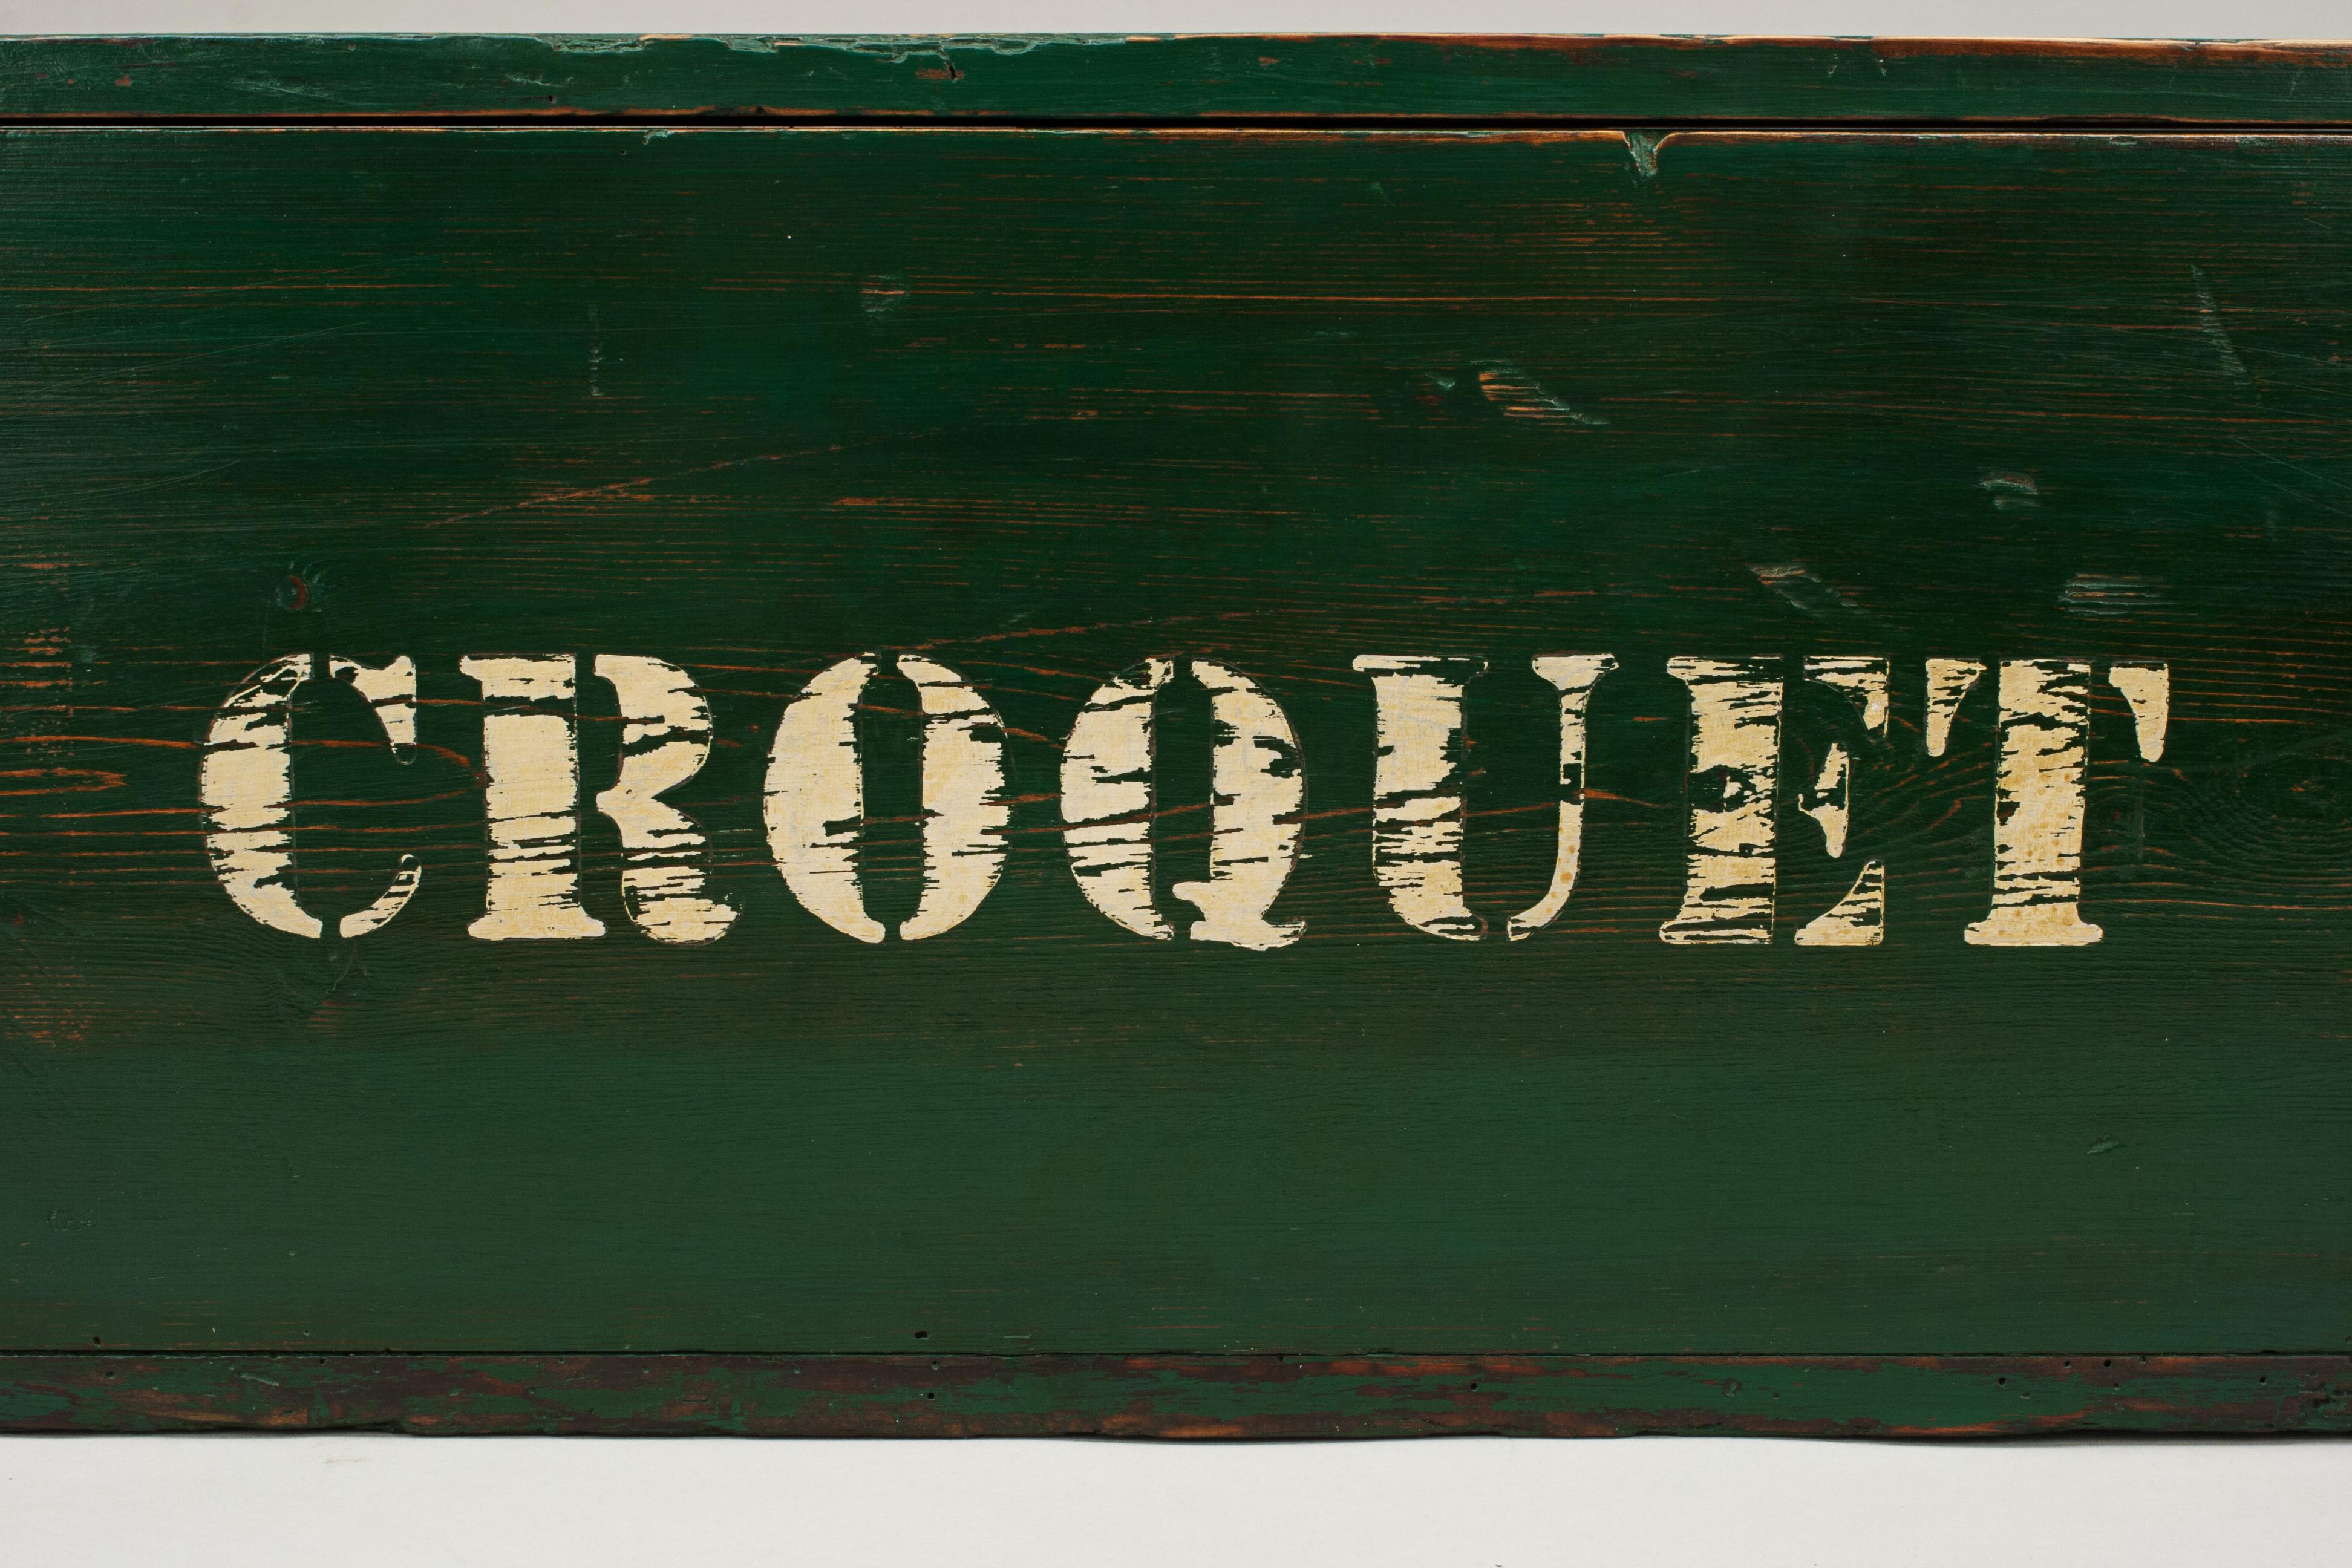 Bateman Stroud Regulation Croquet Set in Pine Box 6